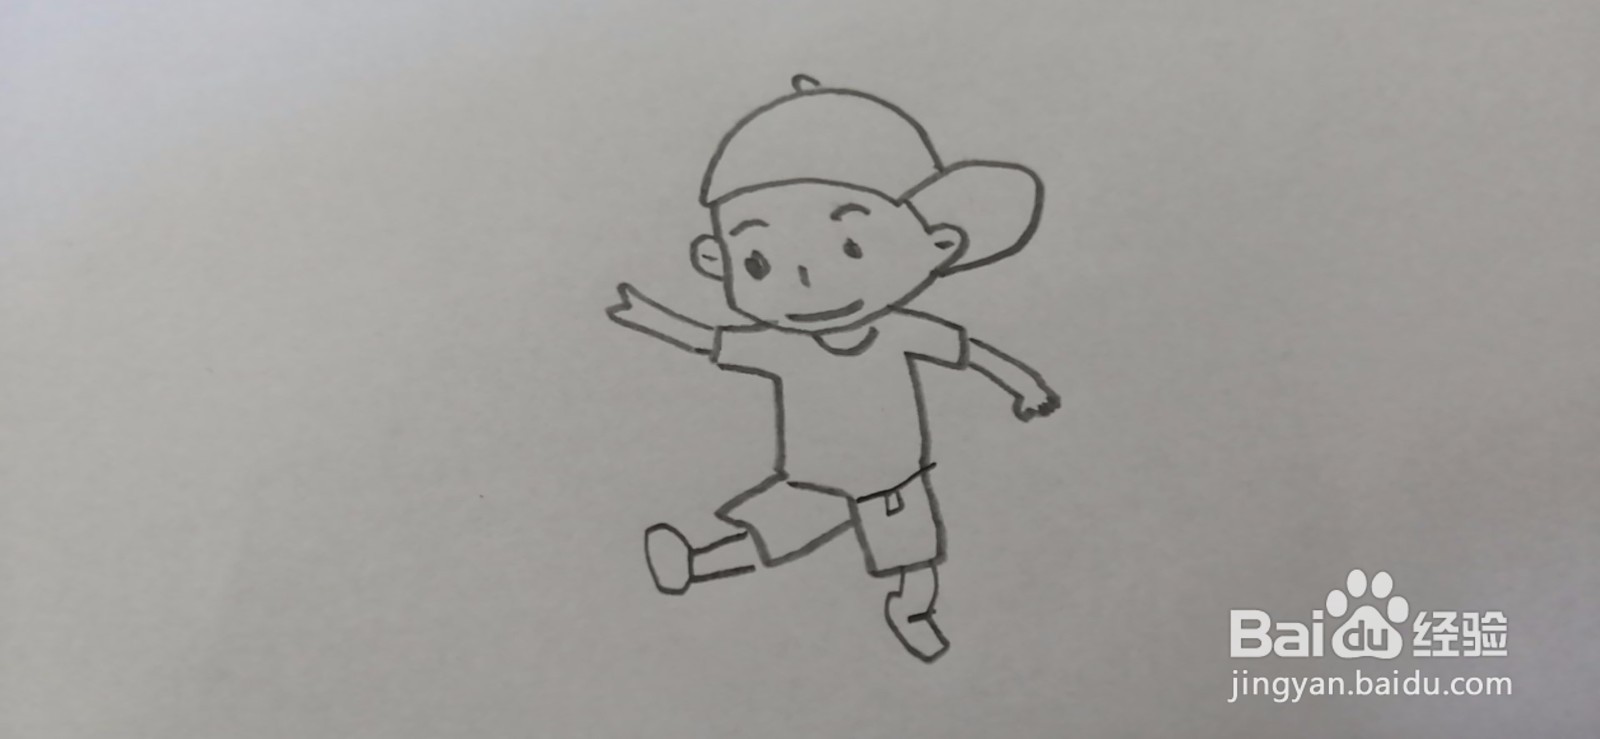 <b>简笔画-可爱卡通奔跑的小男孩简笔画</b>